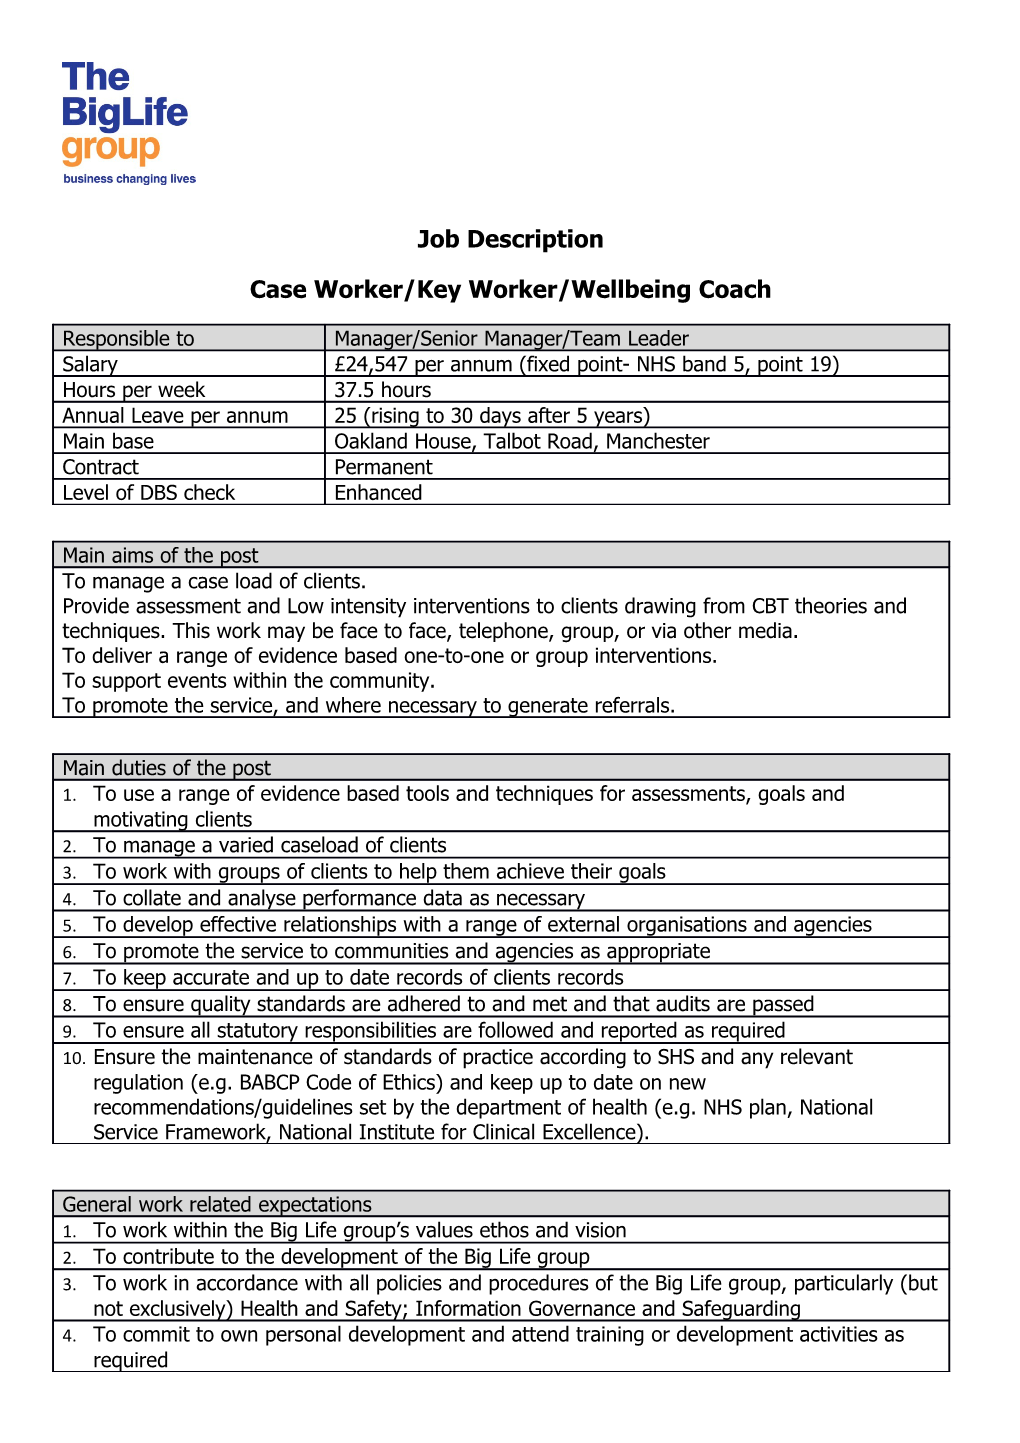 Case Worker/Key Worker/Wellbeing Coach